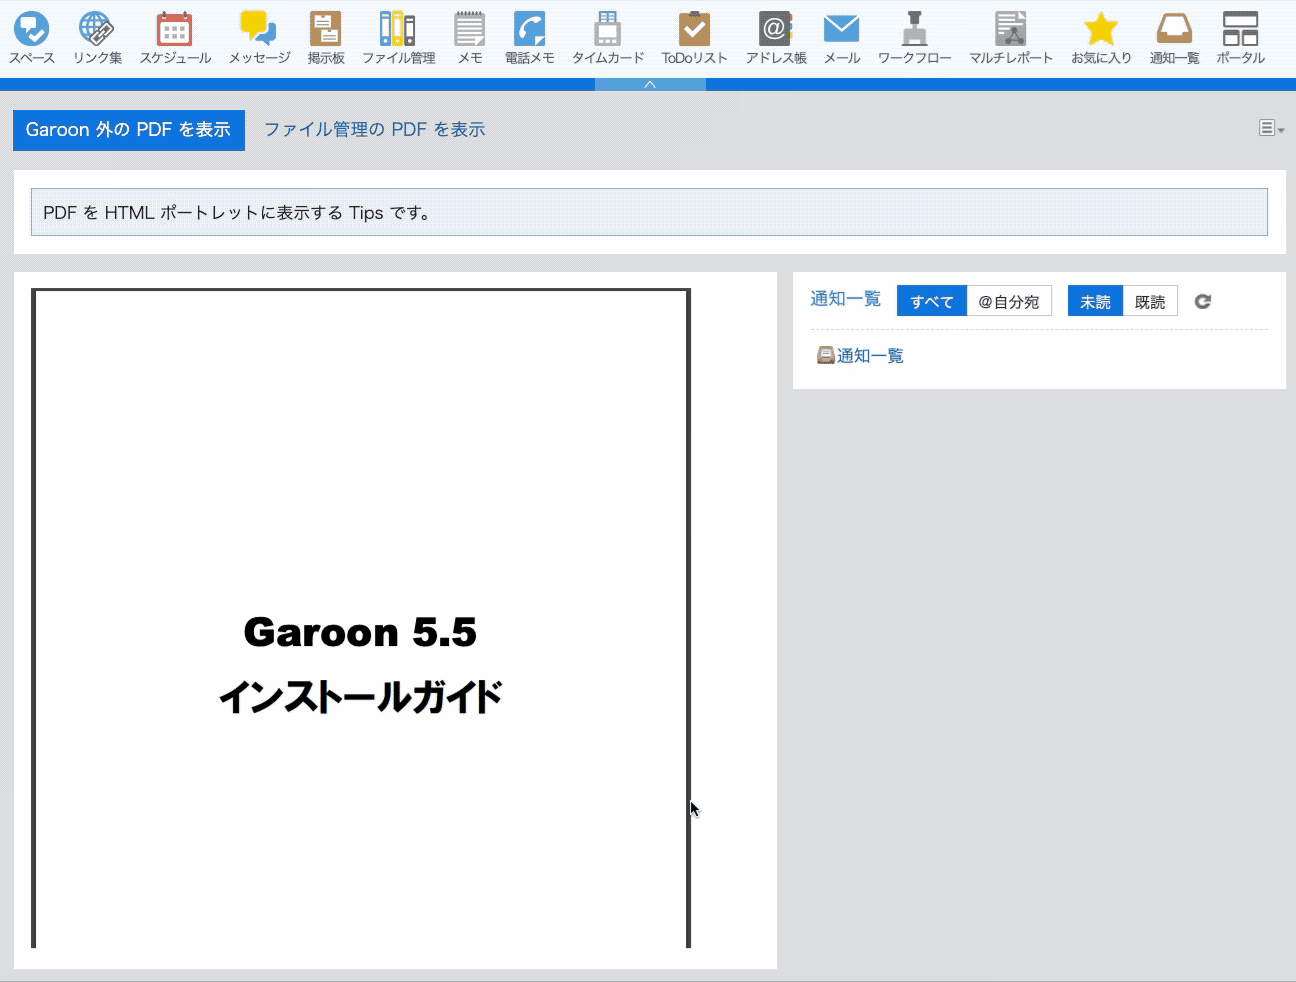 Garoon の外部にある PDF ファイルを表示しているGIF